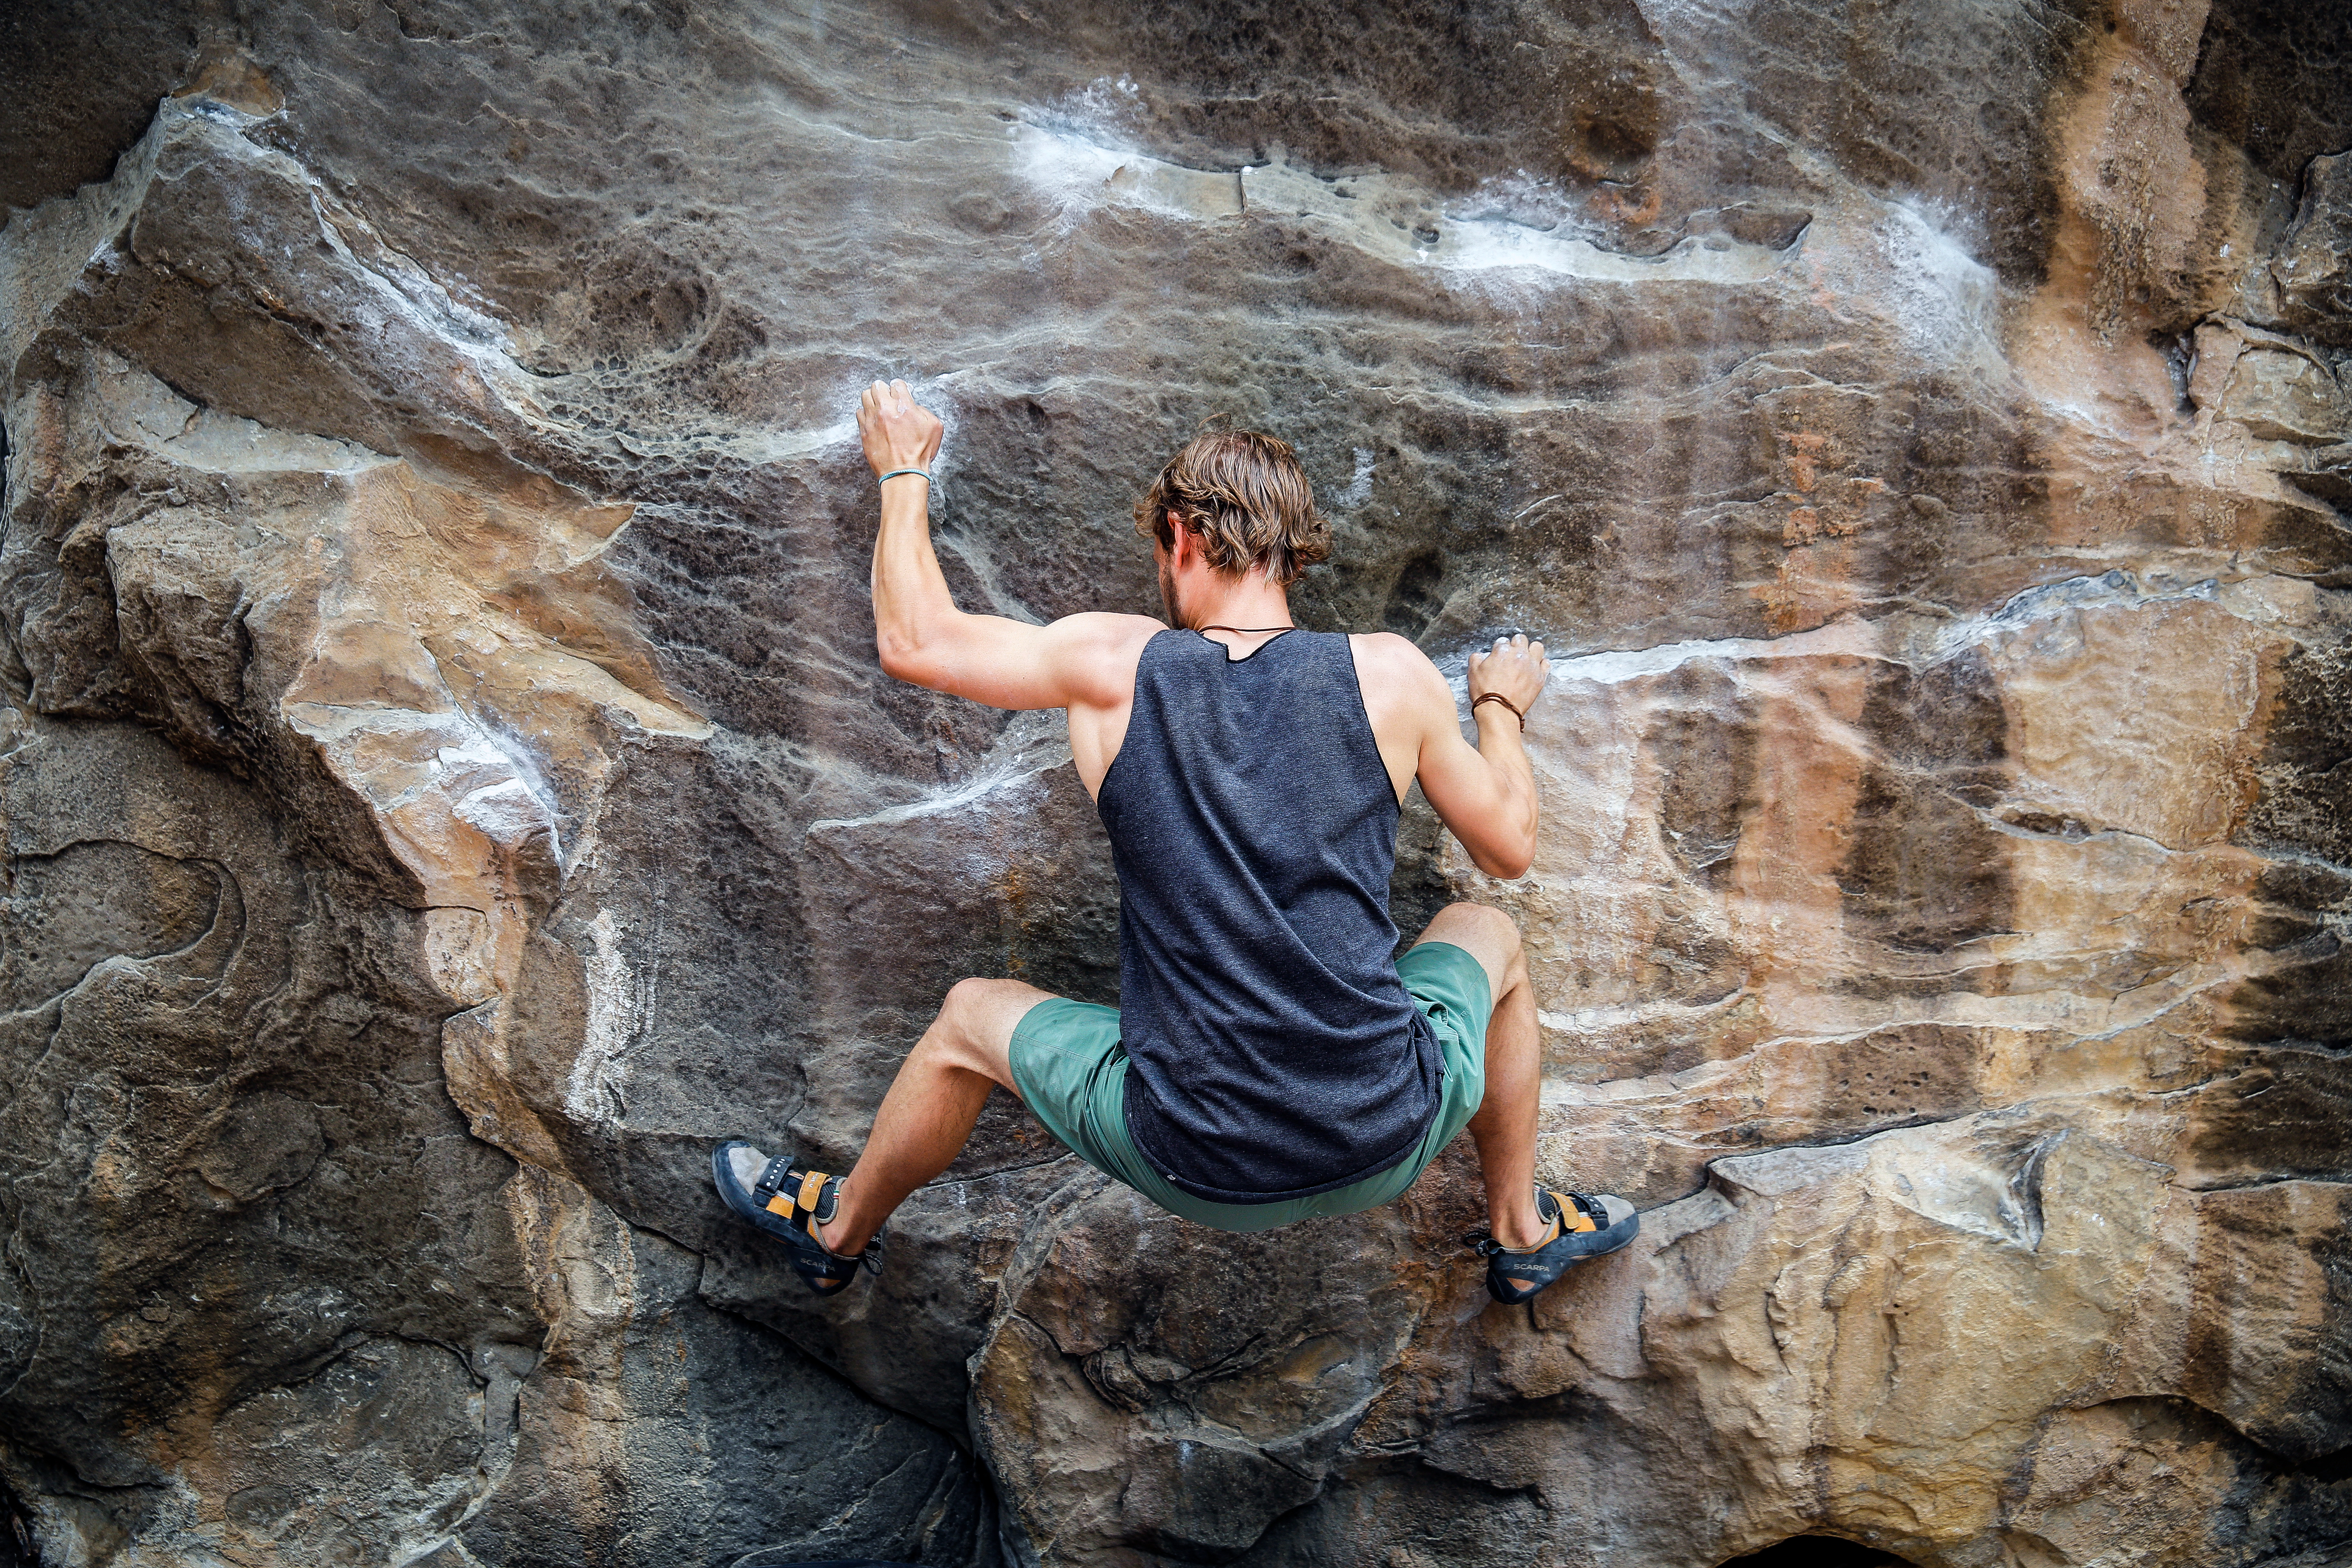 Utah Rock Climbing and Bouldering